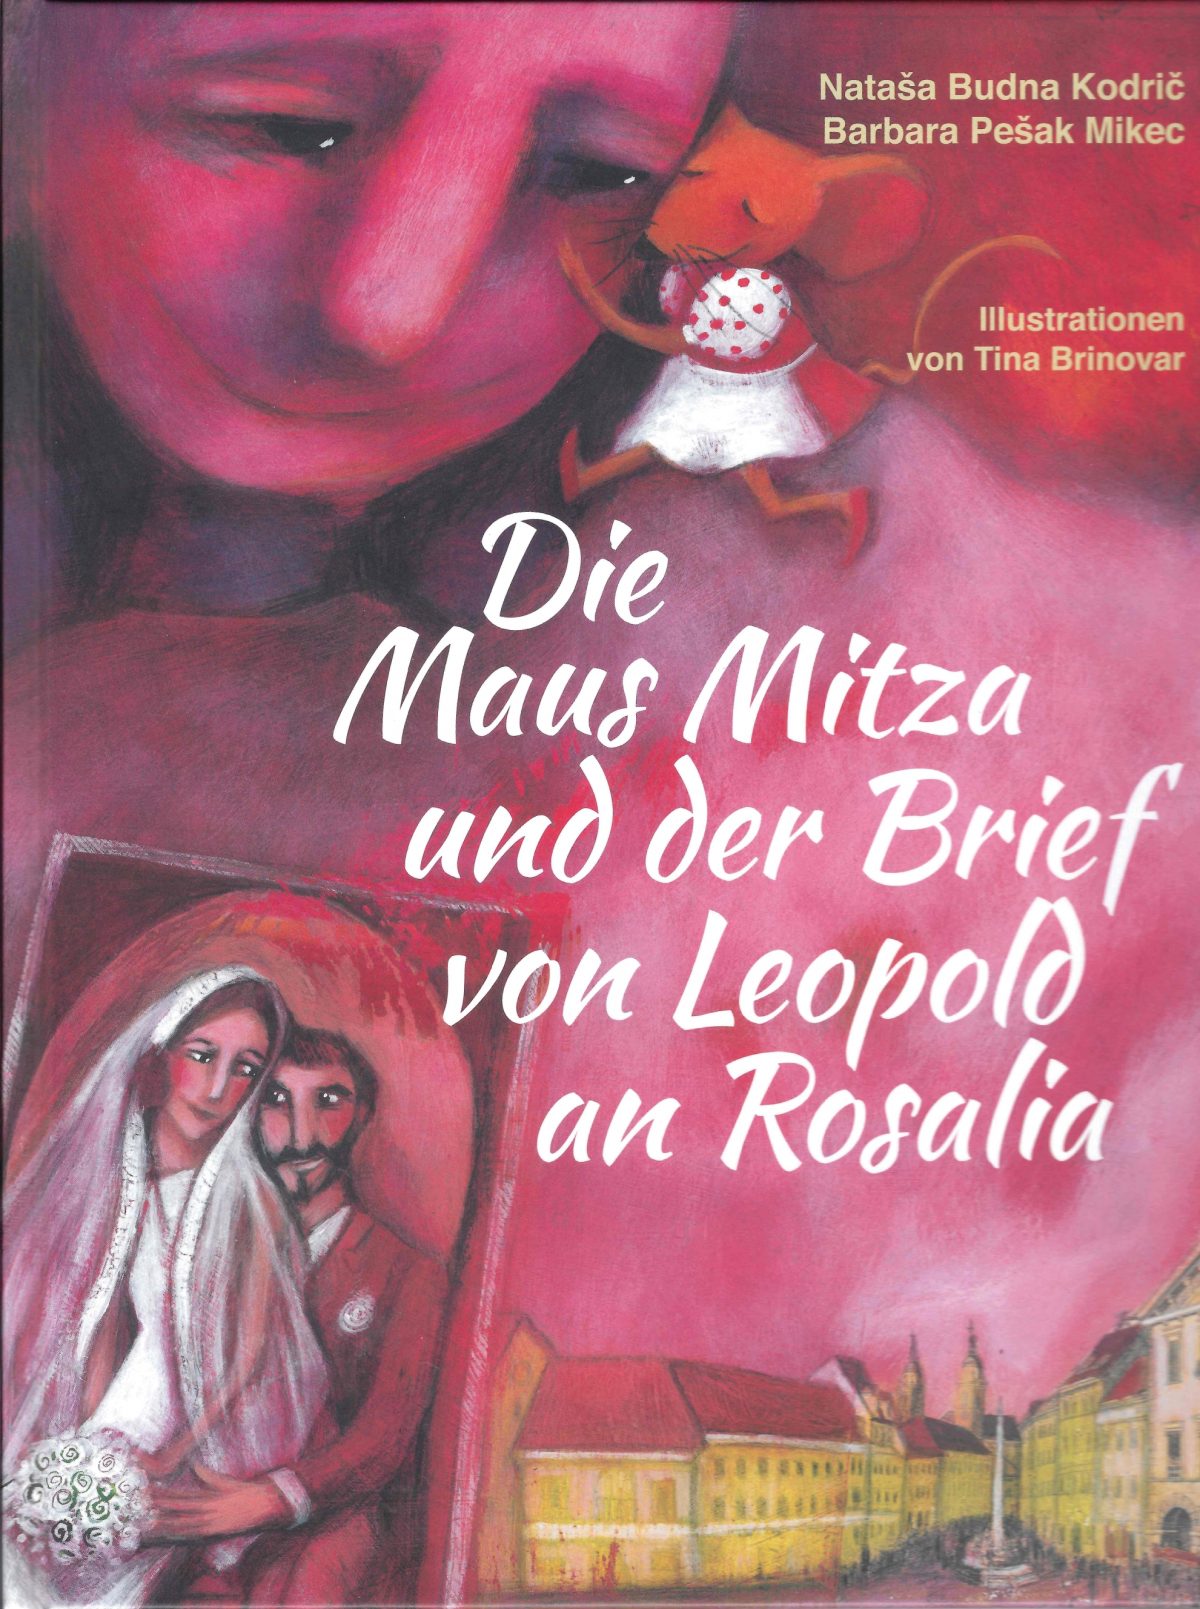 Die Maus Mitza und der Brief von Leopold an Rosalia (Band 2)